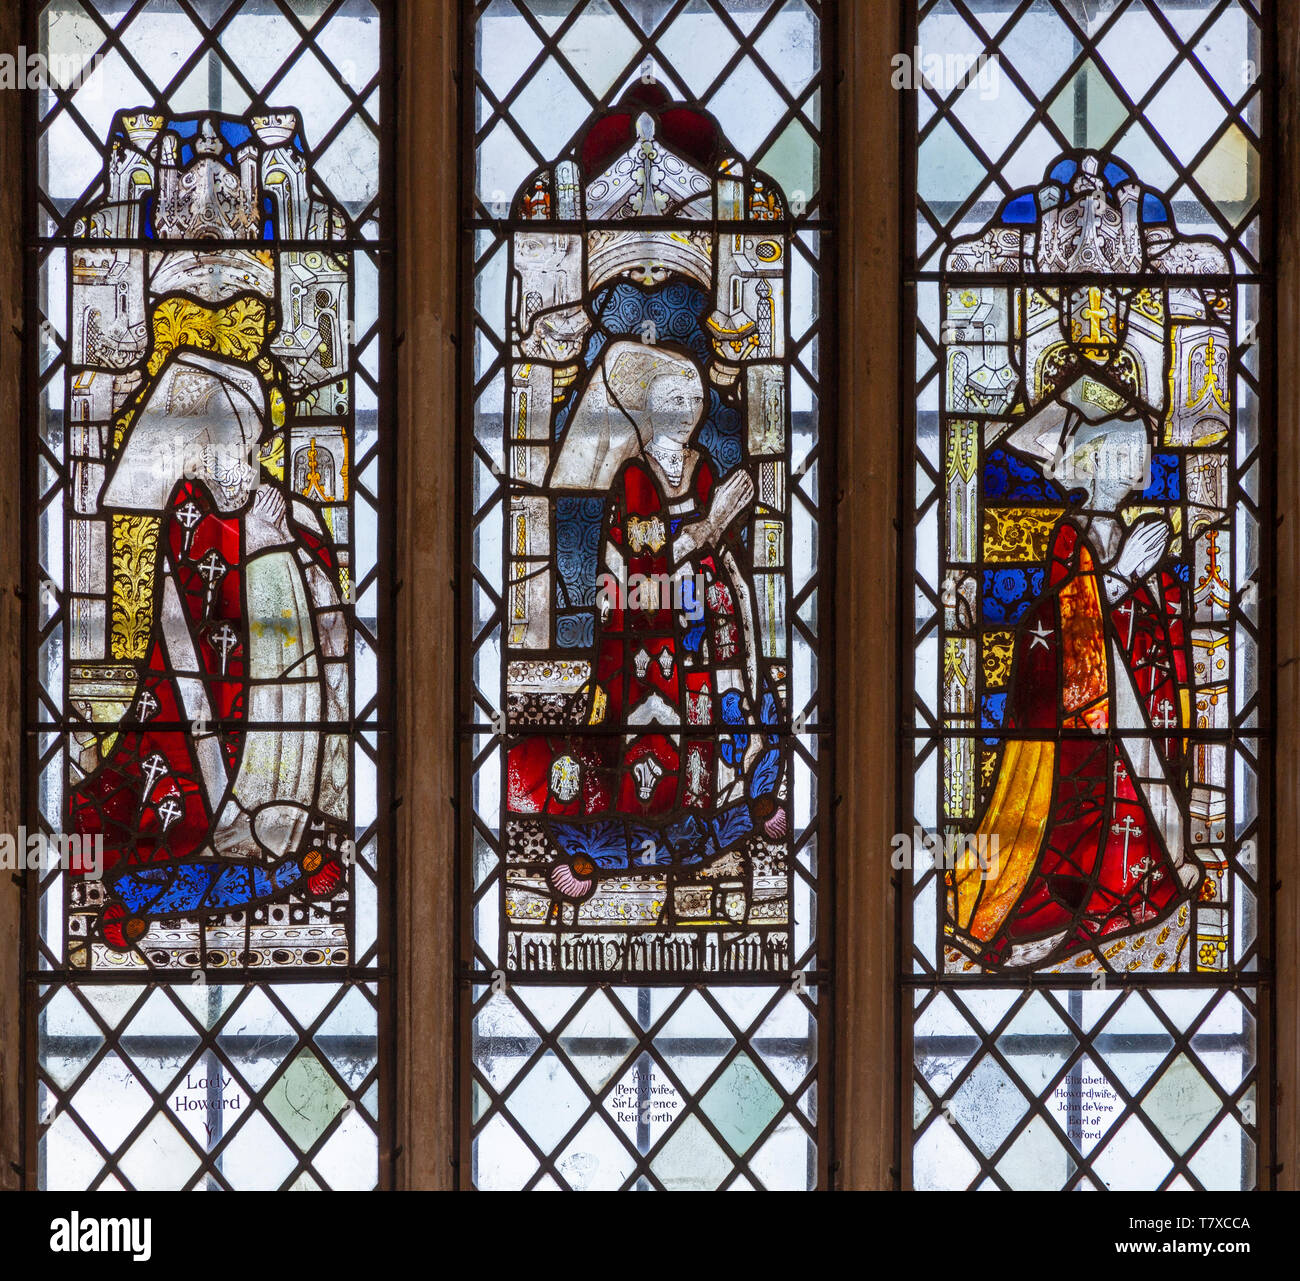 Vidriera medieval, la iglesia de la Santísima Trinidad, Long Melford, Suffolk, Inglaterra - Lady Howard, Ann Percy, Elizabeth Howard Foto de stock